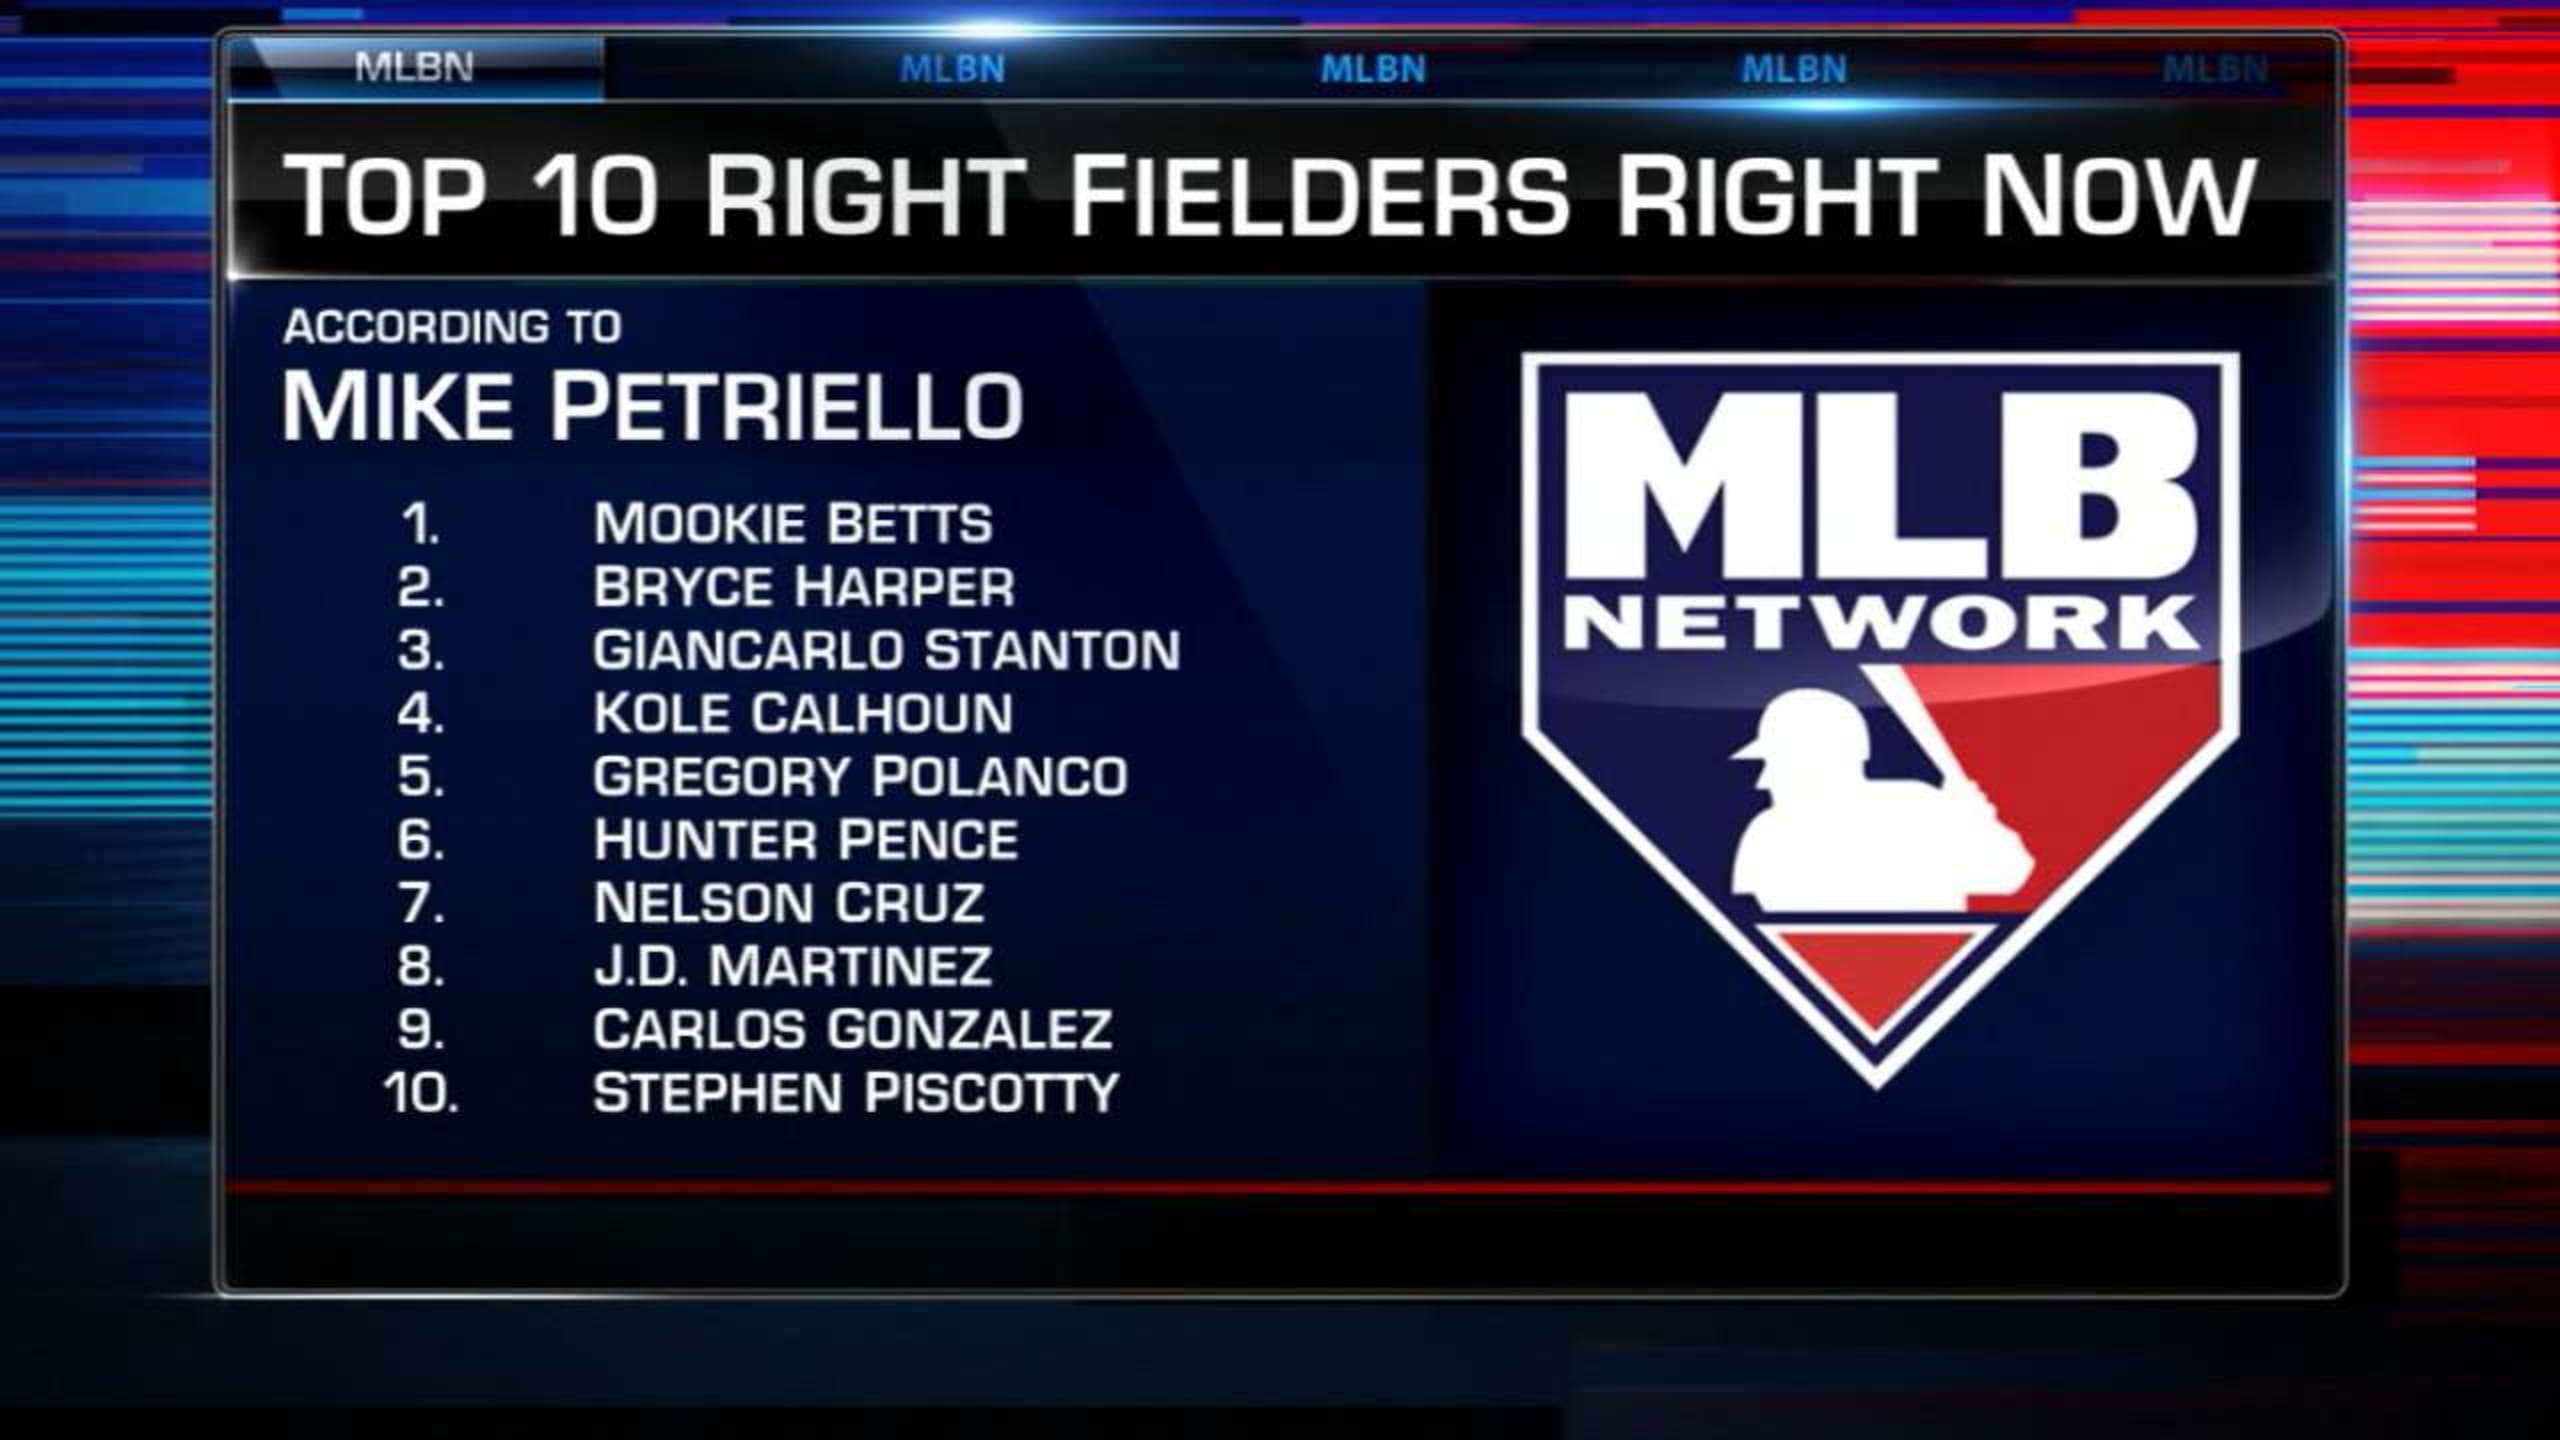 Top 10 right fielders